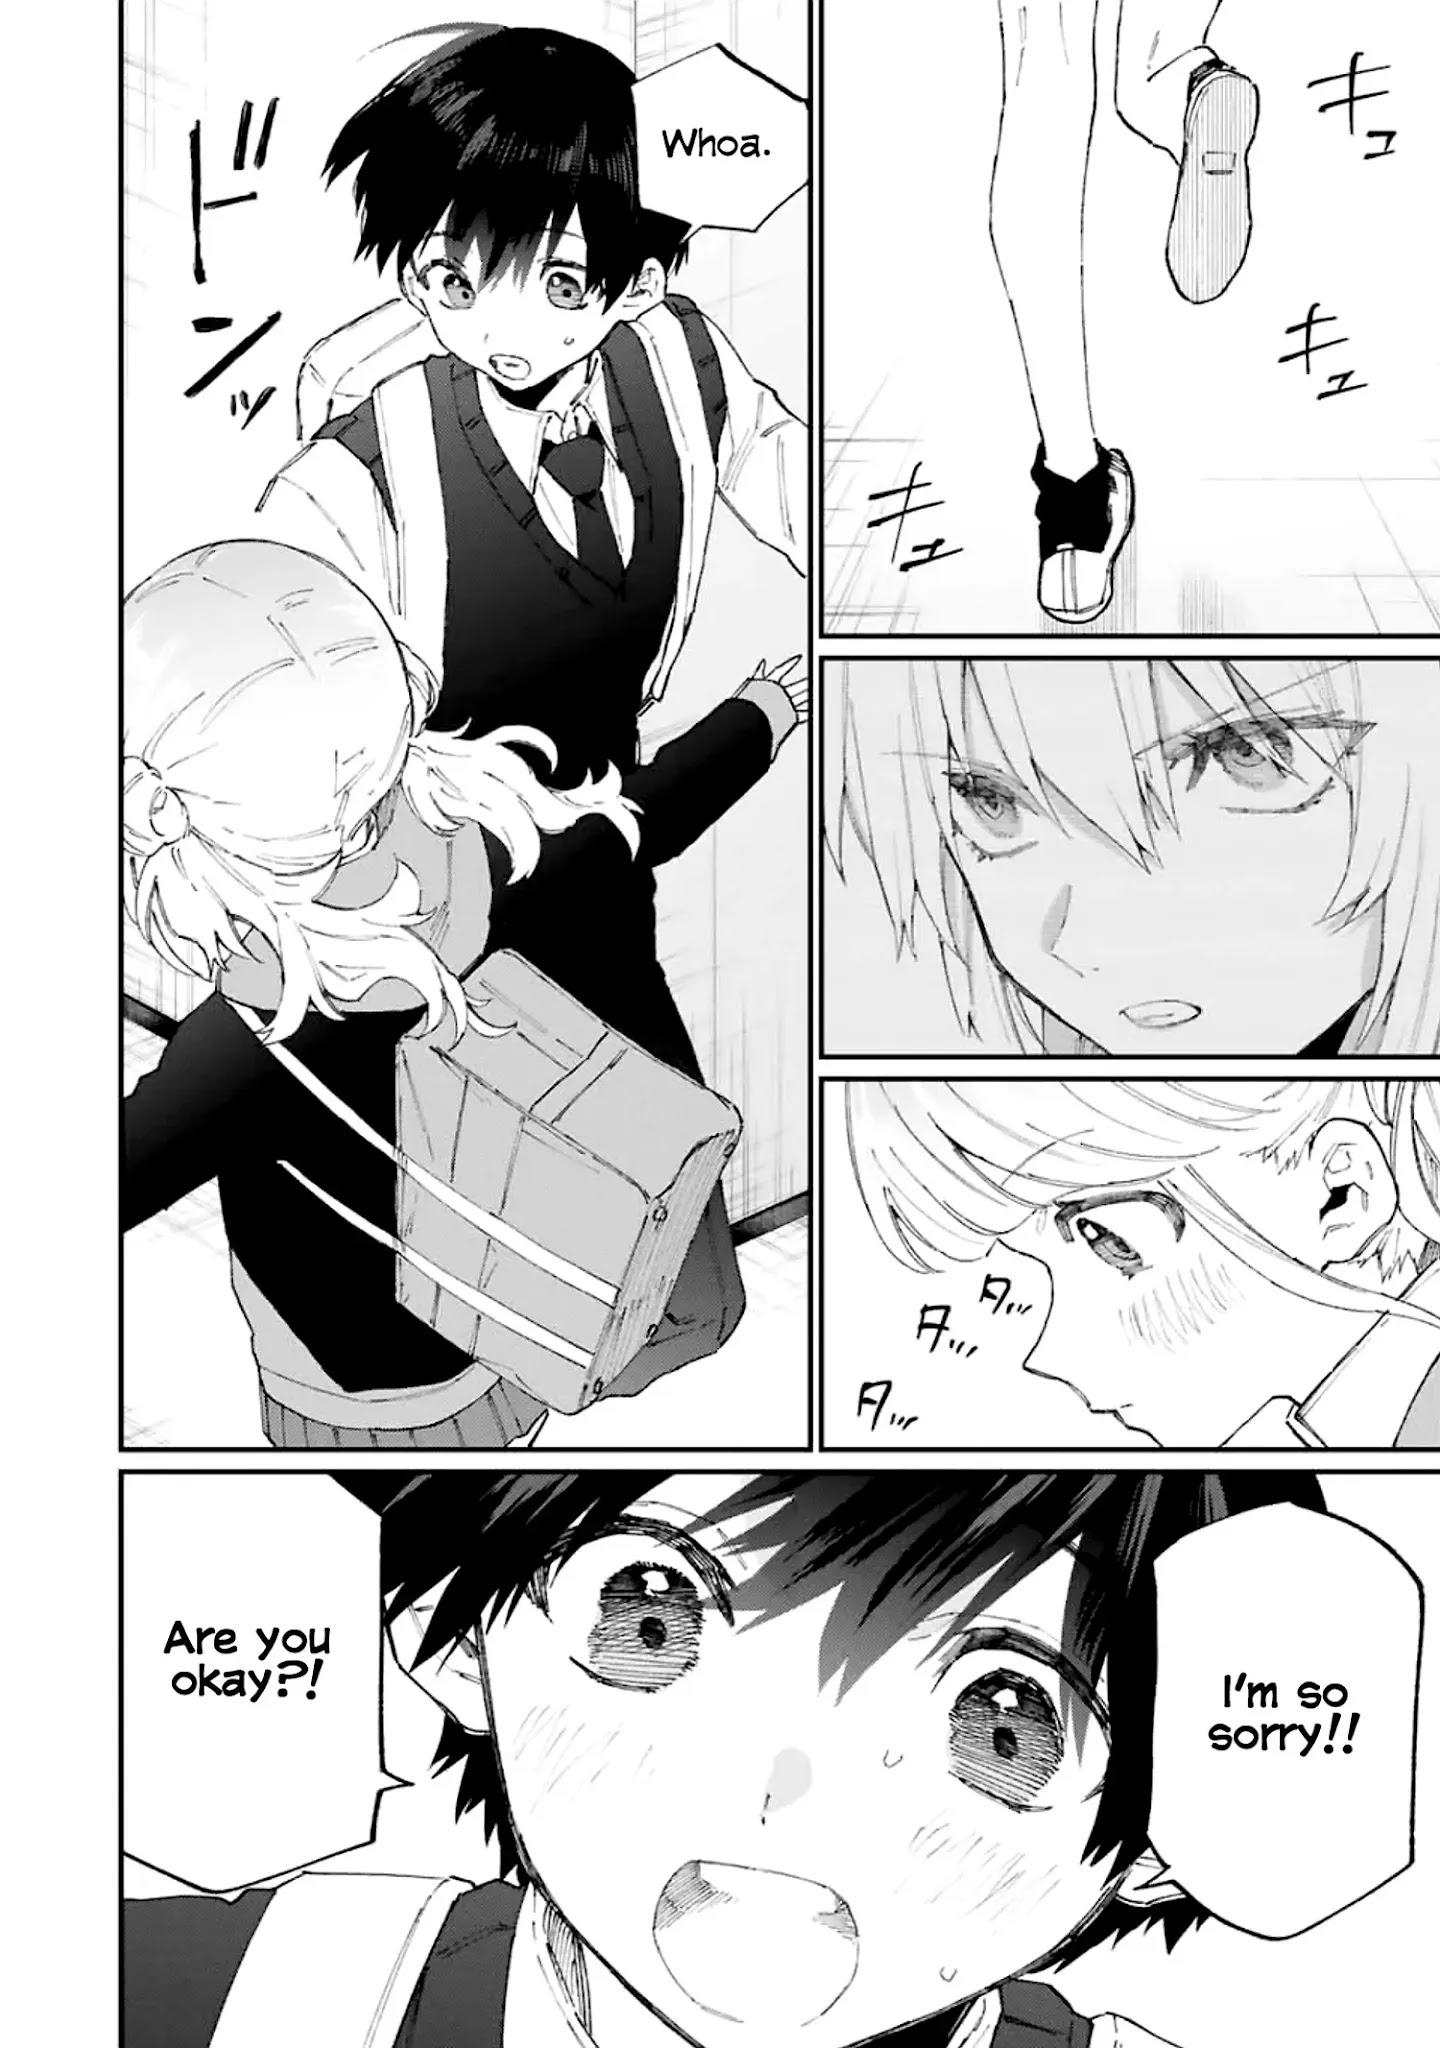 Shikimori's Not Just A Cutie Chapter 124 page 14 - Mangakakalots.com